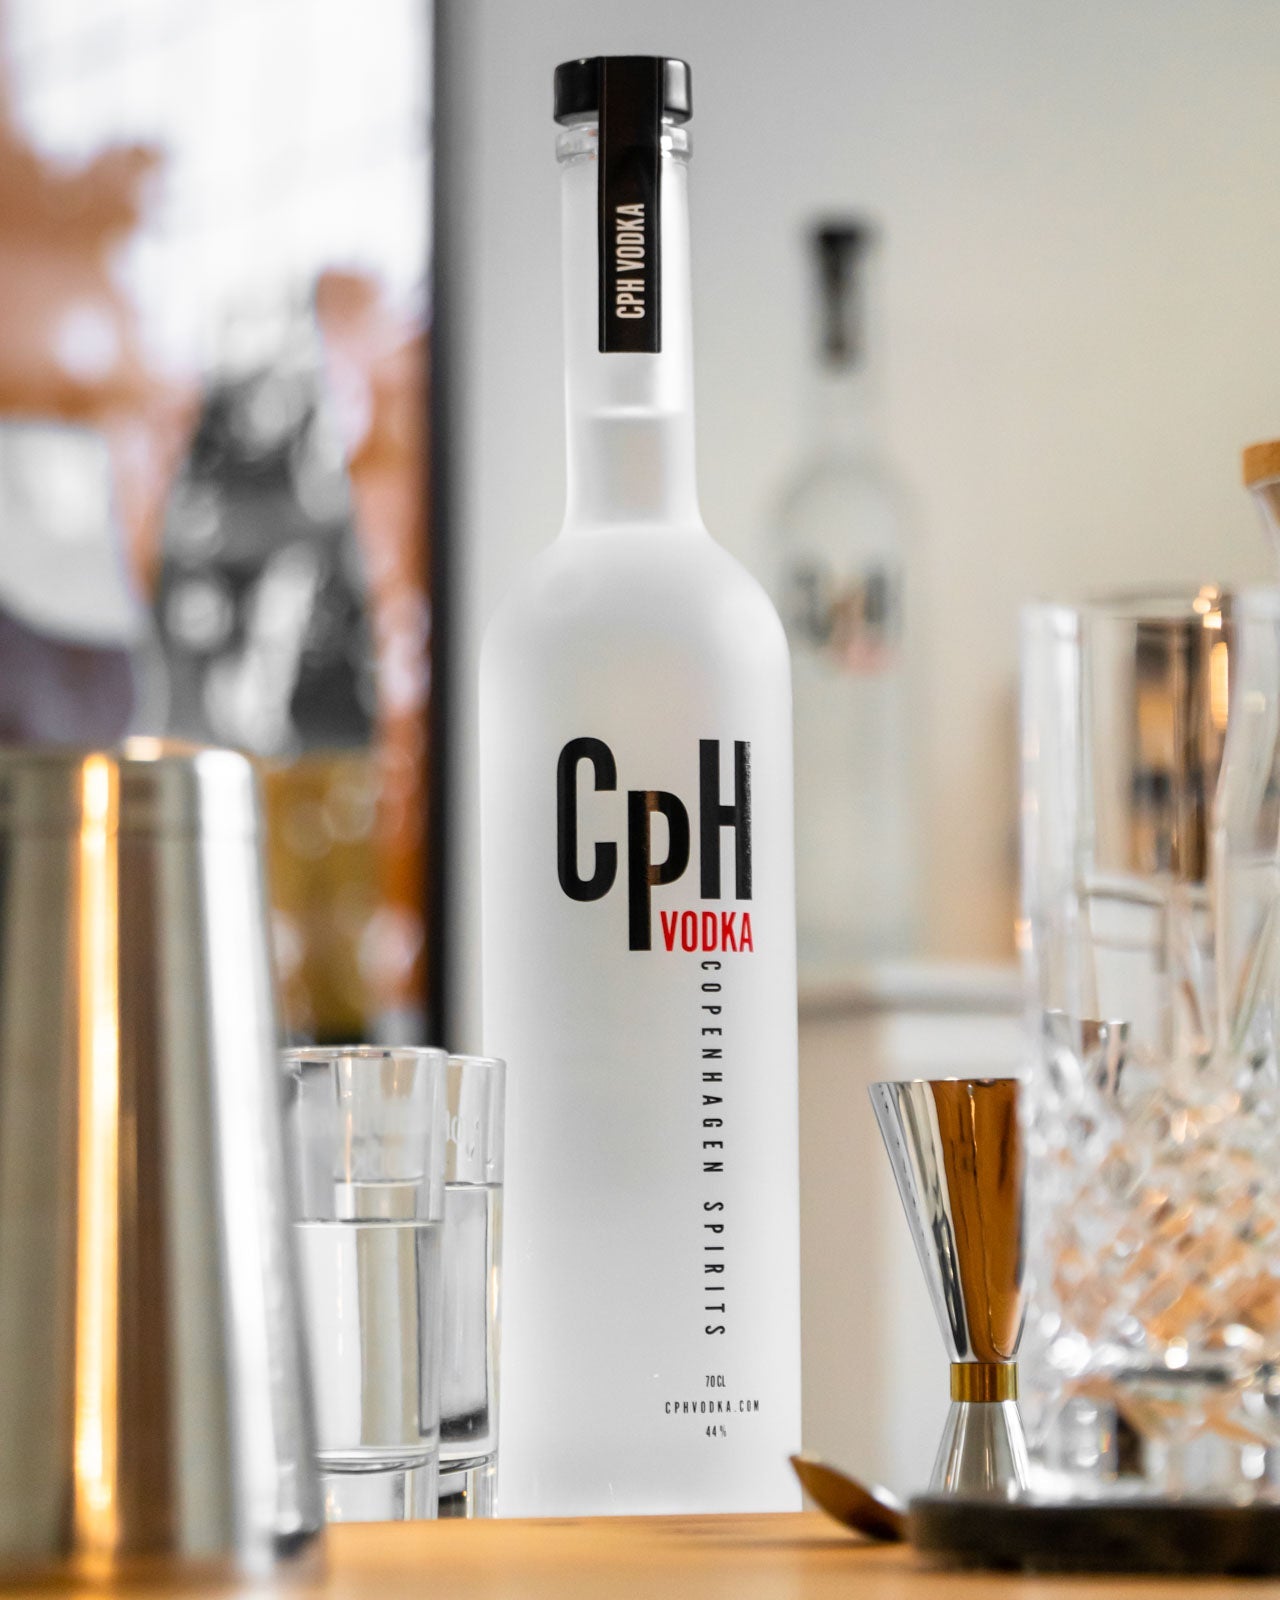 CpH Vodka 70 cl. 44% - PremiumBottles